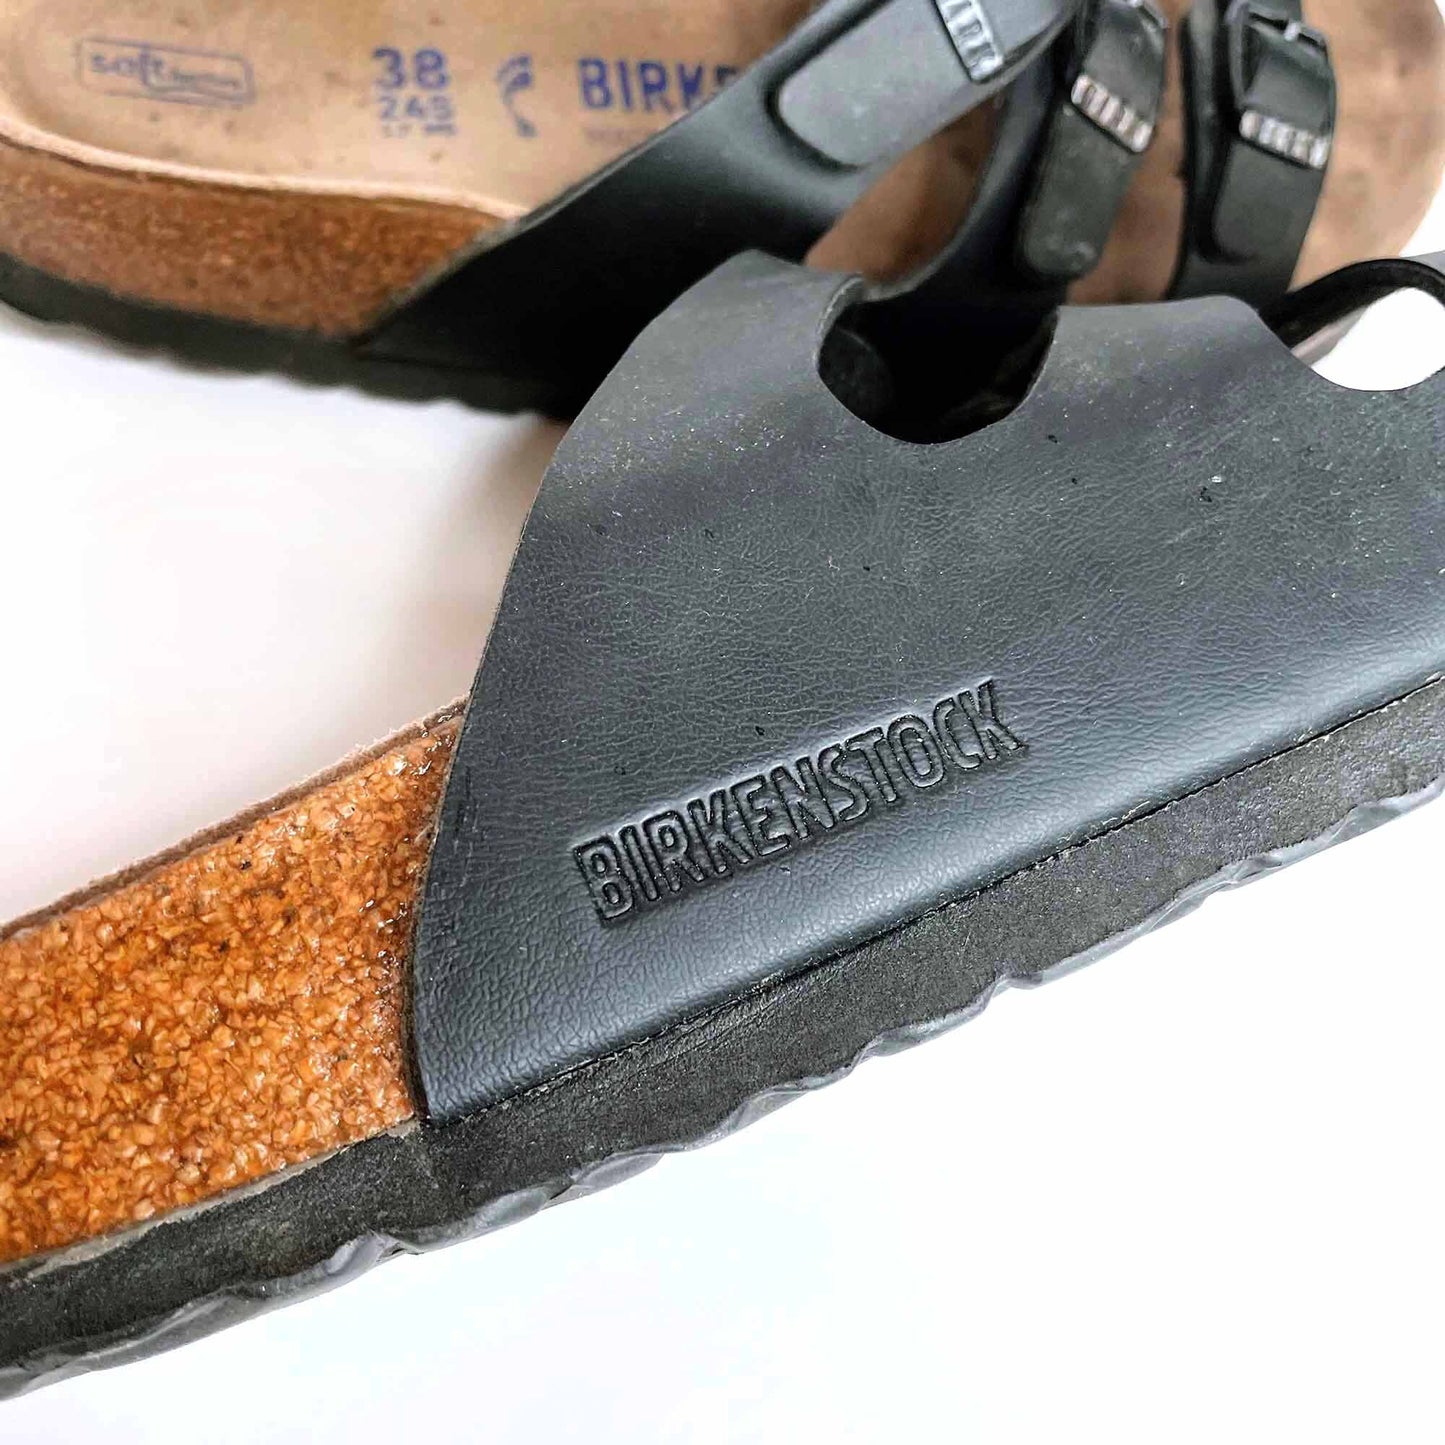 birkentstock birko-flor florida soft footbed sandals - size 38